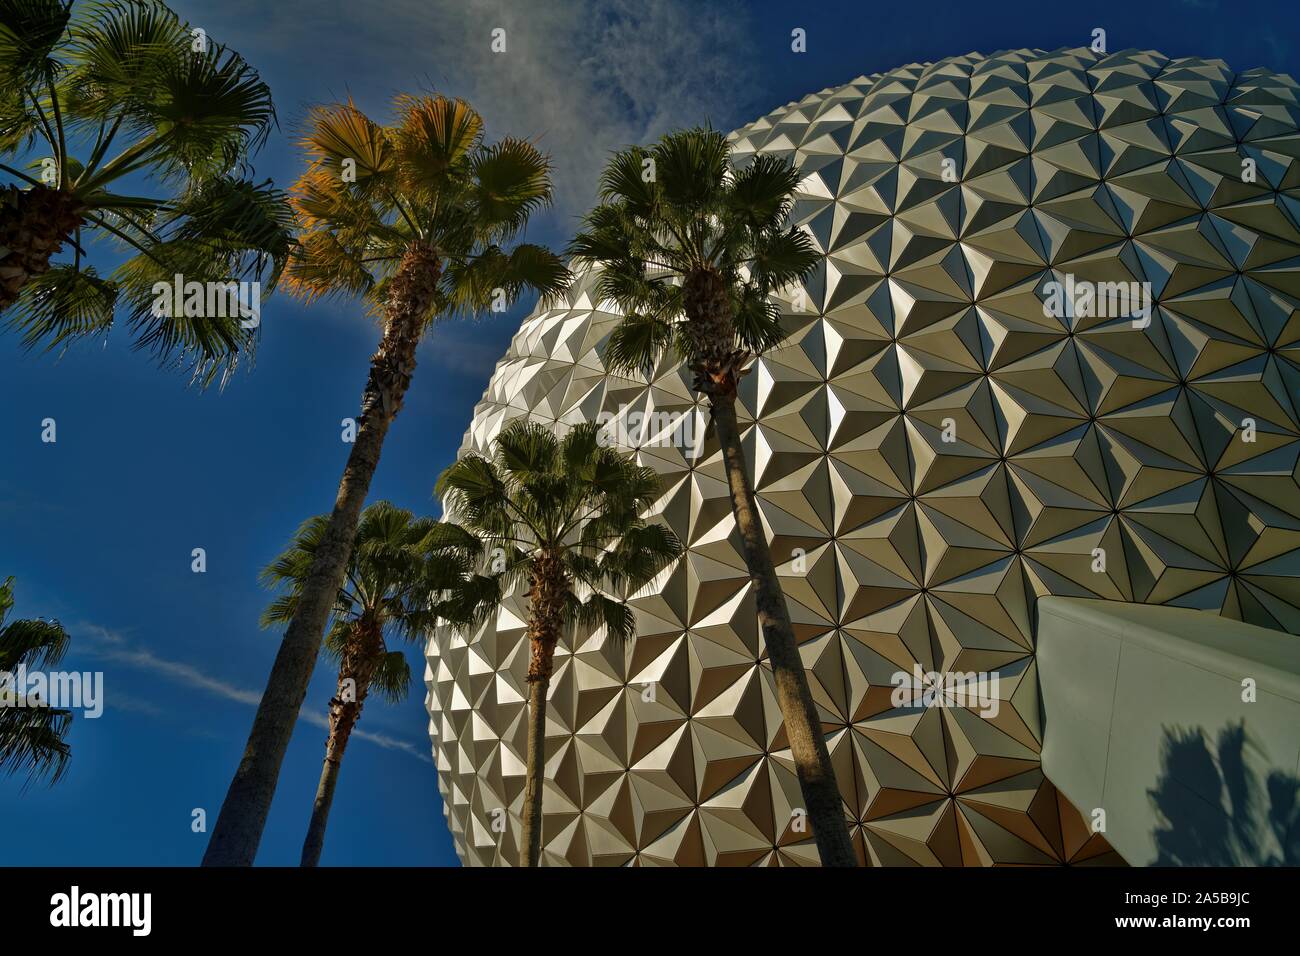 La sfera Spaceship Earth attrazione a Epcot in Walt Disney World a Orlando, Florida, con alberi e nuvole nel cielo. Foto Stock